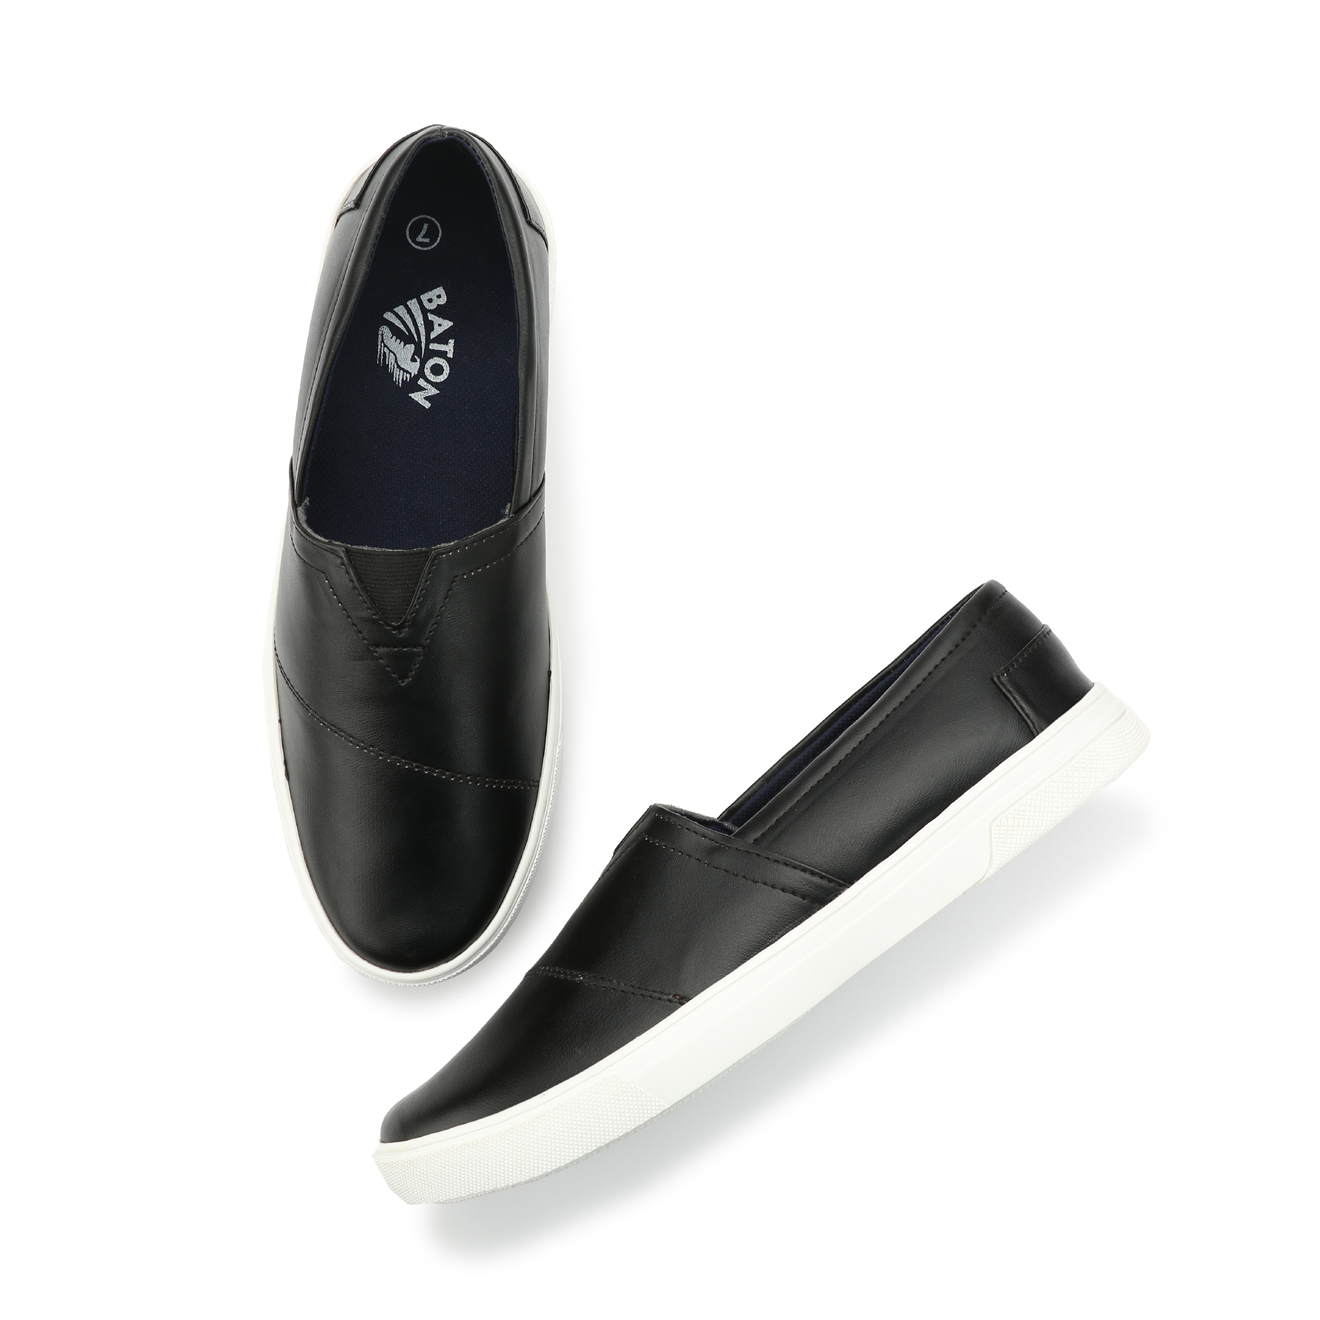 Buy Men's Black & White Slip on Loafers Online @ ₹999 from ShopClues